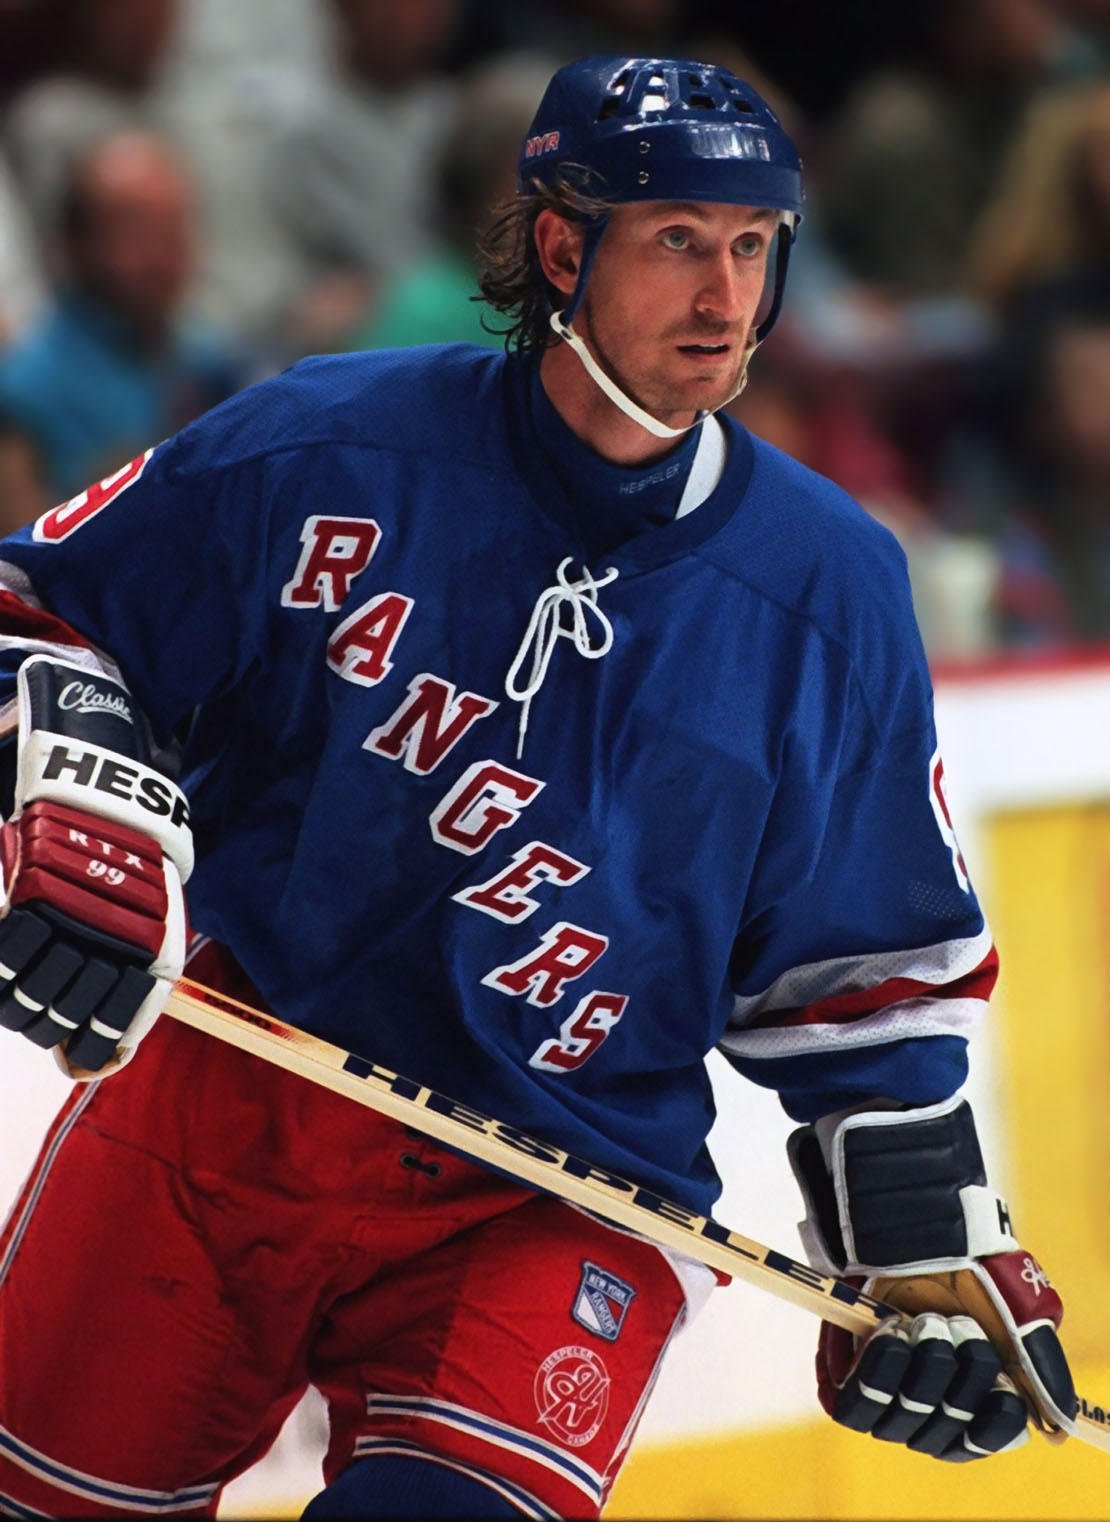 Foto ijshockey, Wayne Gretzky, New York Rangers - Afb 26063.